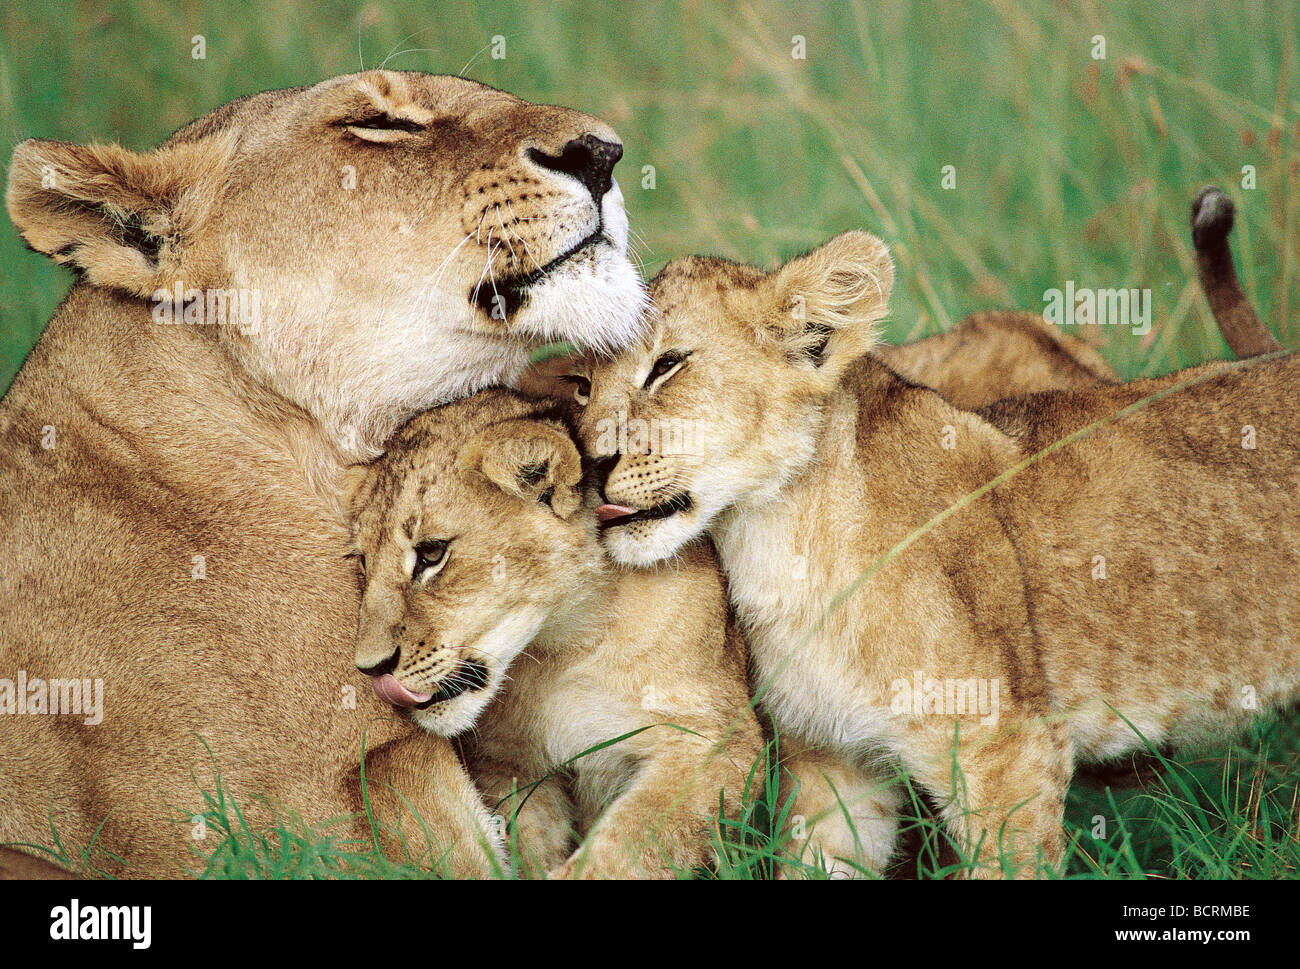 Deux oursons câlins lionne 2 Masai Mara National Reserve Kenya Afrique de l'Est Banque D'Images